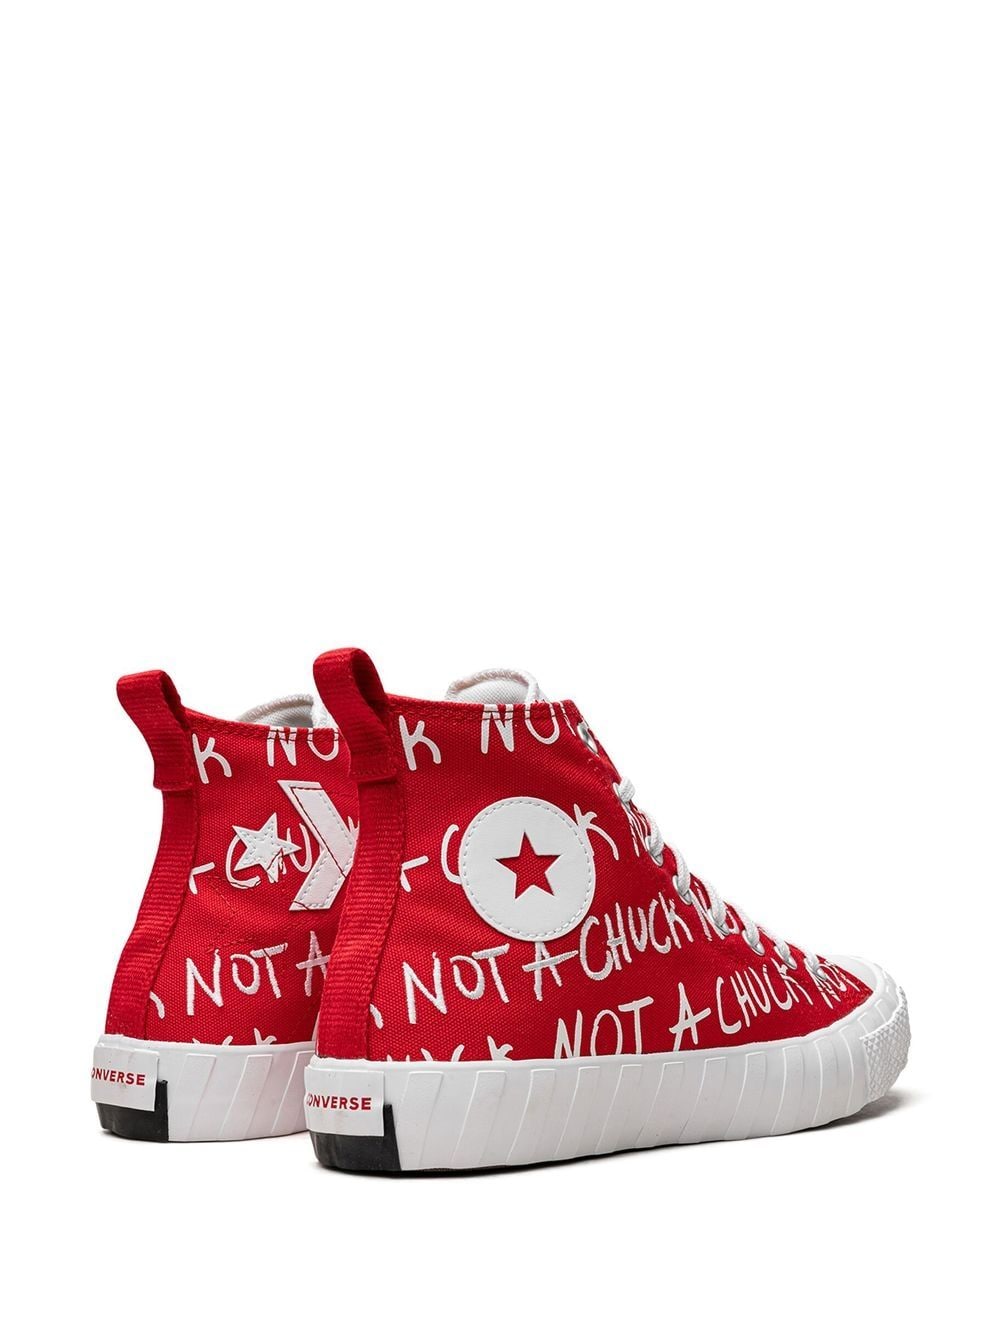 Shop Converse Unt1tl3d "not A Chuck-red" Sneakers